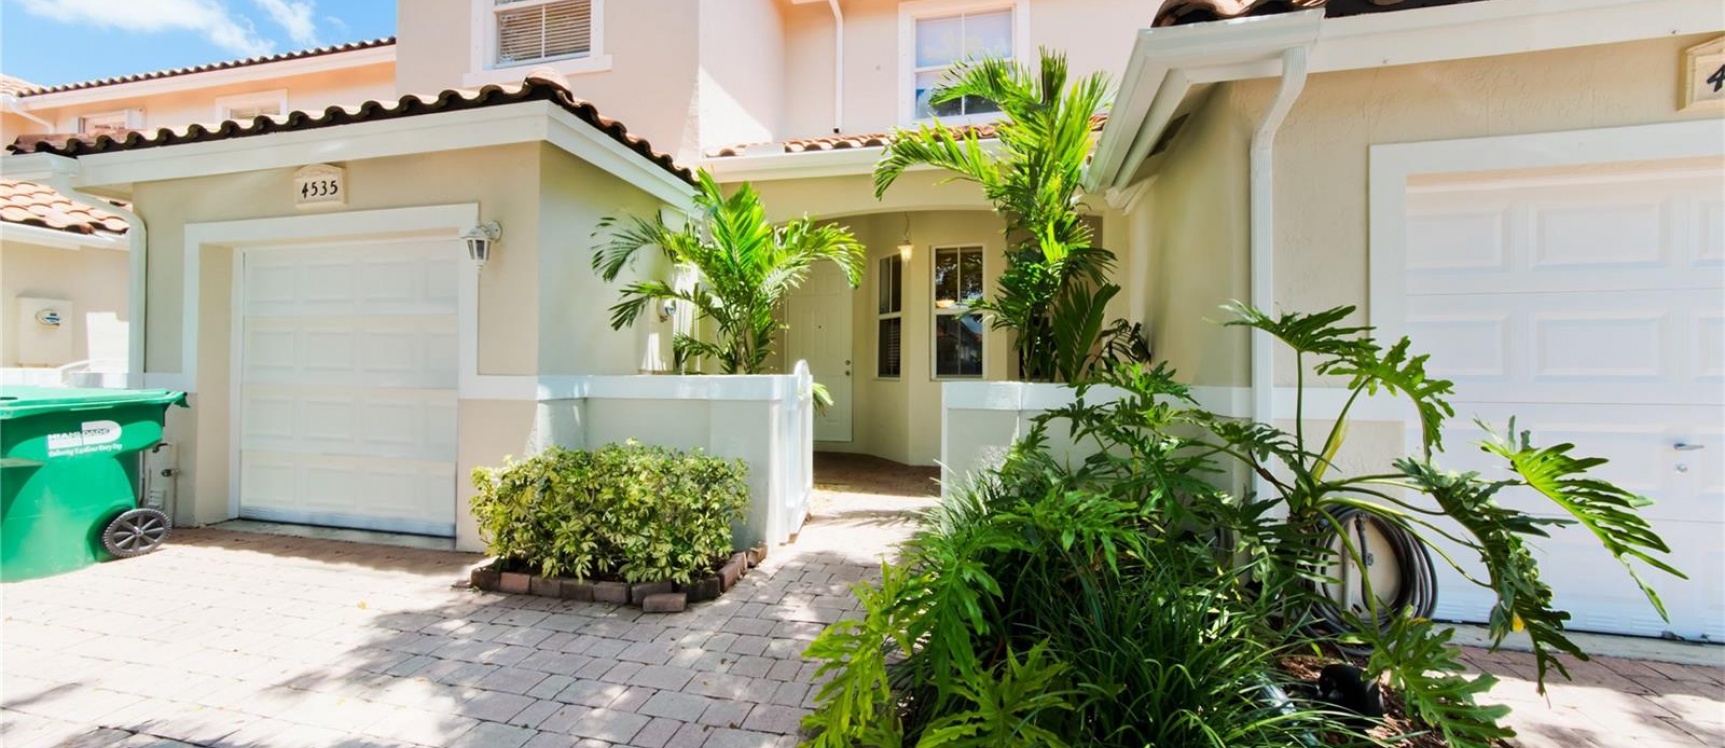 GeoBienes - Casa a la Venta en Miami, DORAL CHASE - Plusvalia Guayaquil Casas de venta y alquiler Inmobiliaria Ecuador